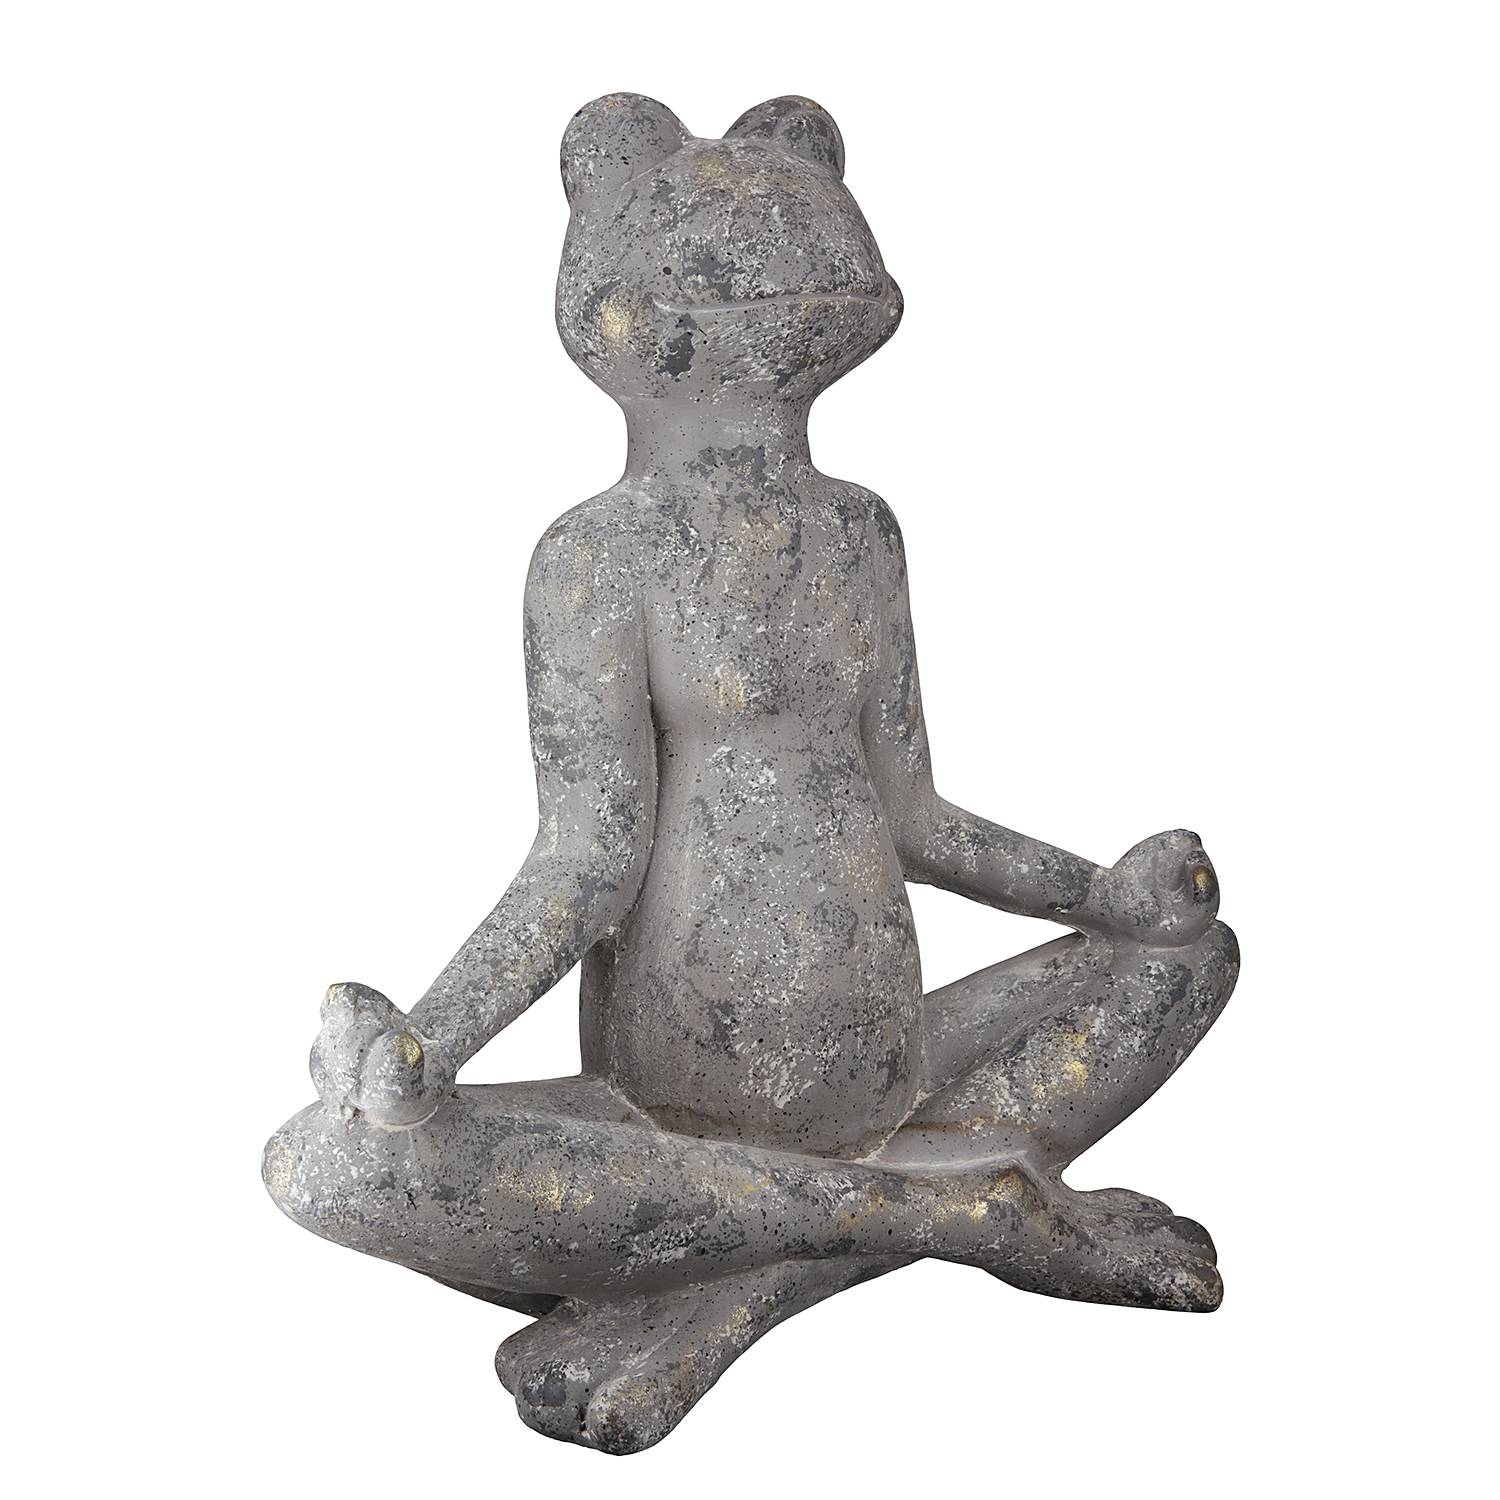 Yoga Skulptur kaufen | Frosch home24